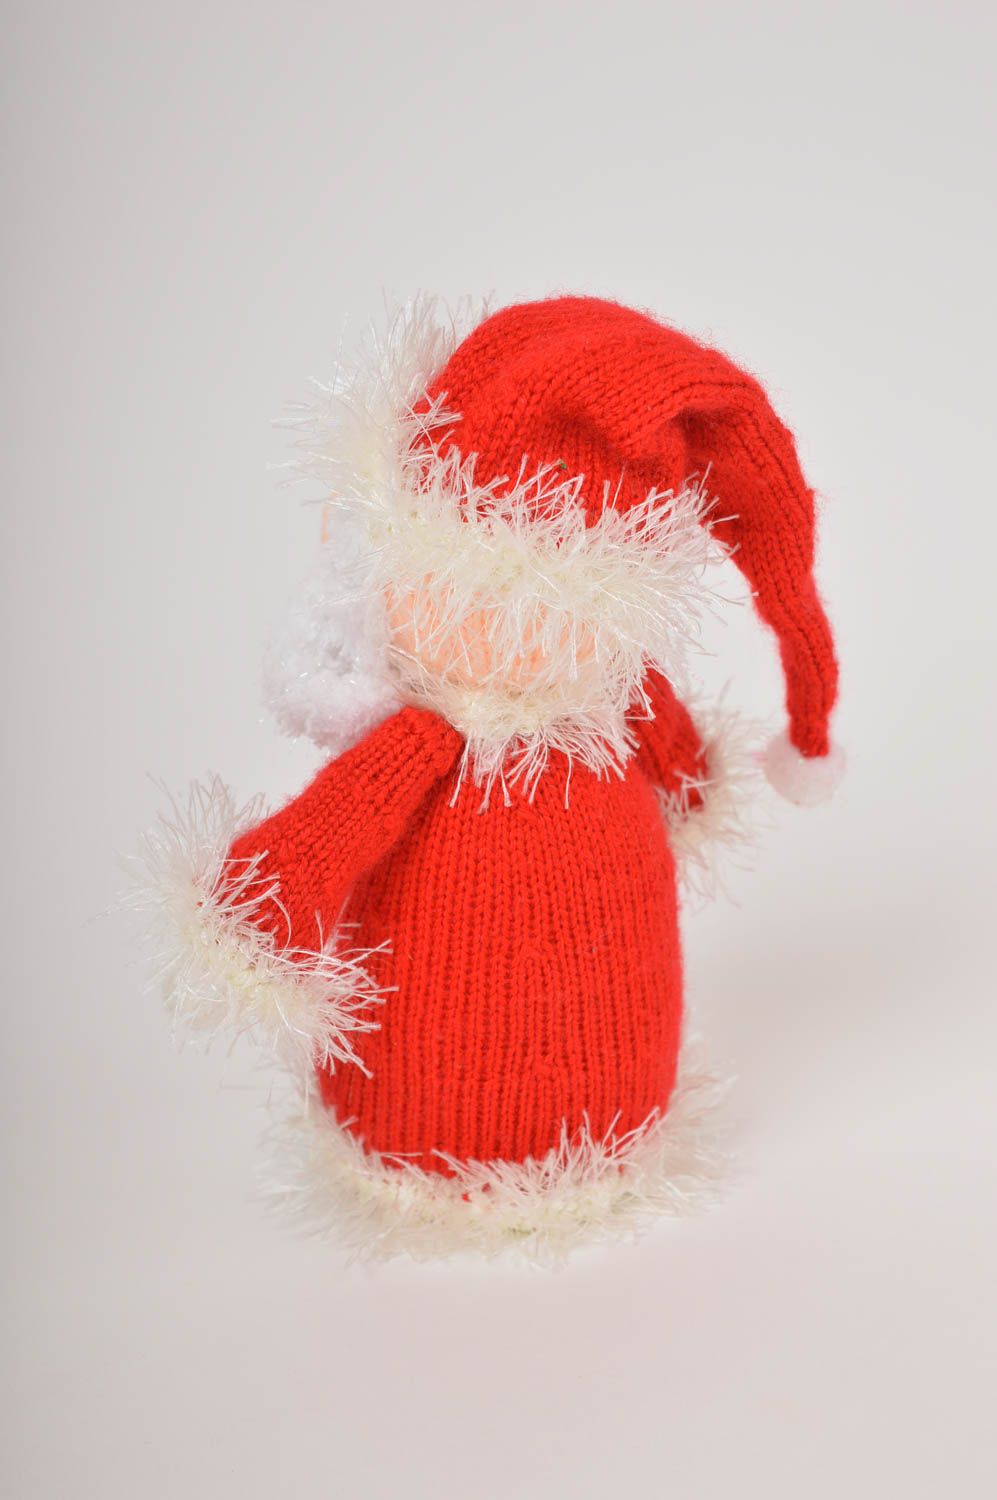 Handmade ausgefallenes Spielzeug Geschenk Idee Weihnachtsmann gehäkelt foto 4